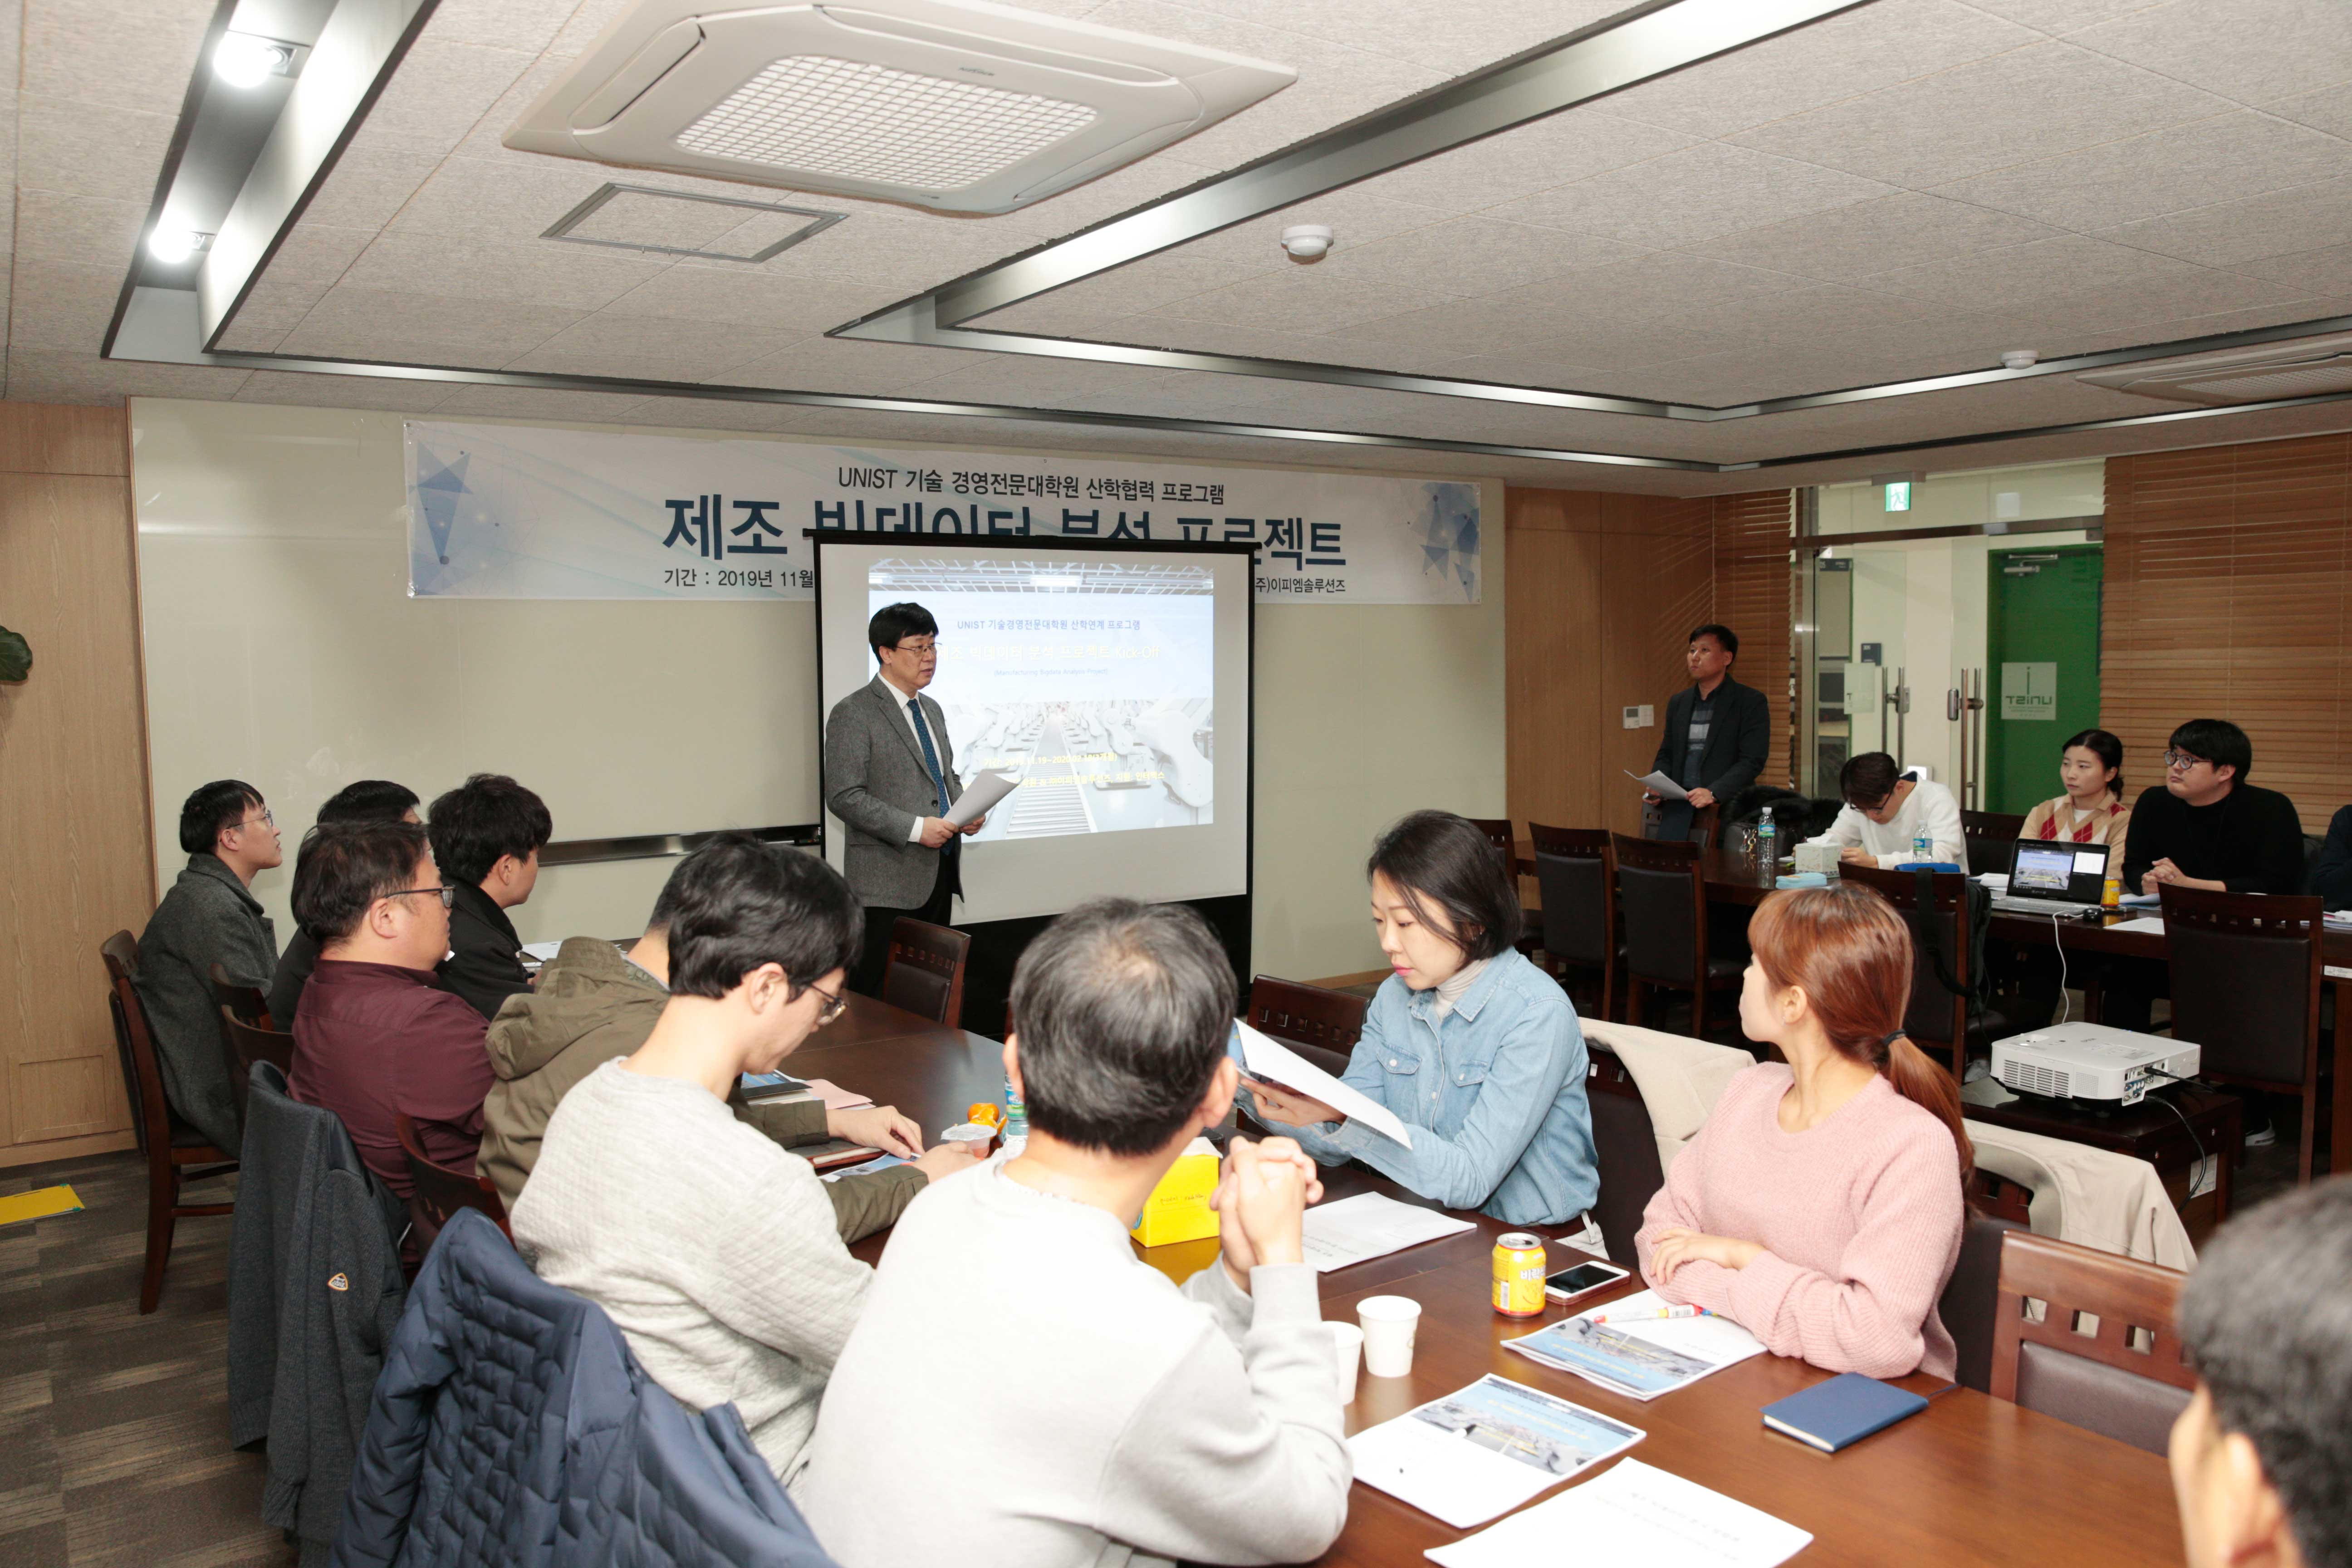 최영록 기술경영전문대학원장이 프로젝트 진행 방향에 대해 소개했다. | 사진: 김경채